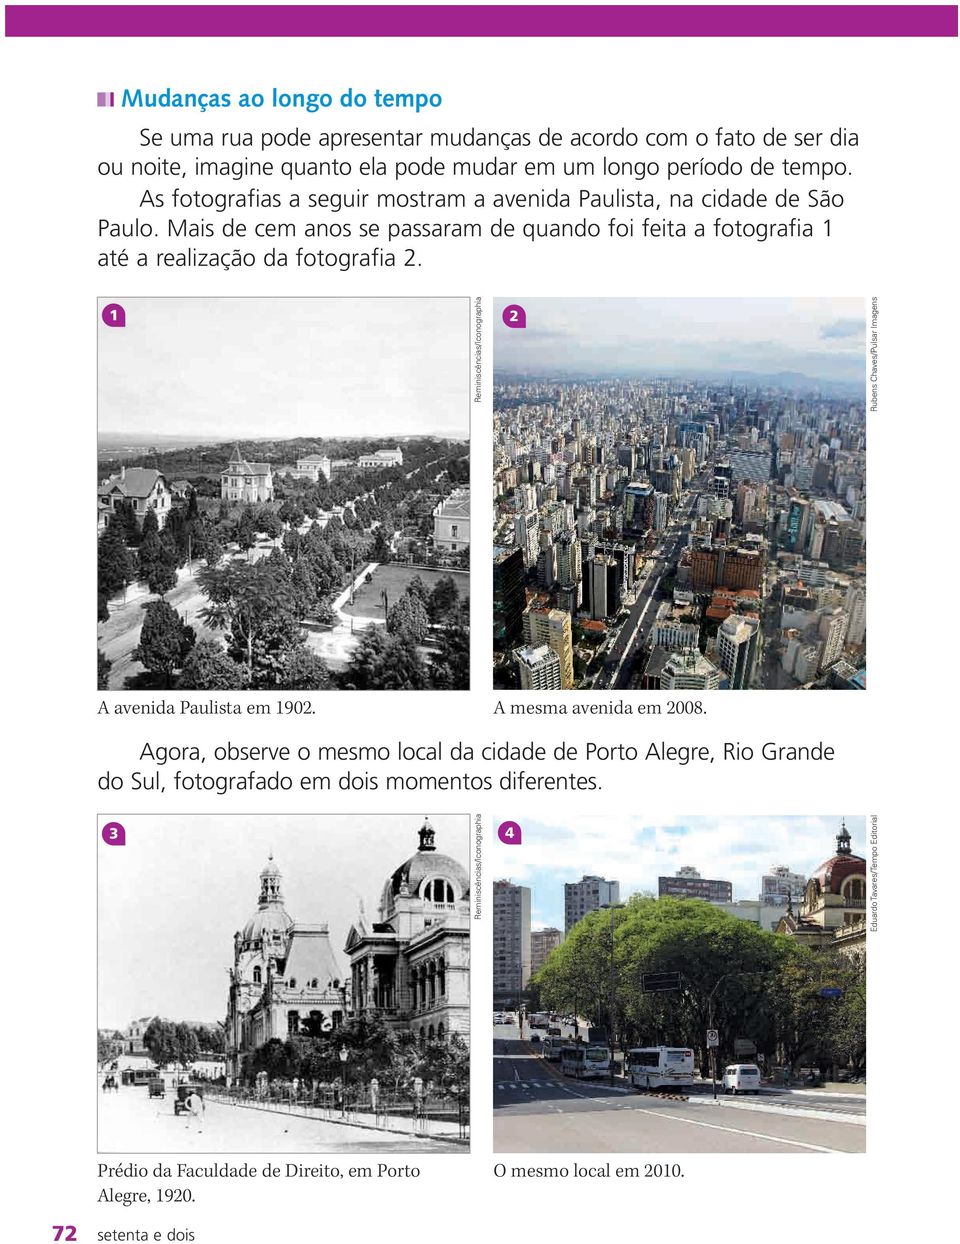 1 2 A avenida Paulista em 1902. Agora, observe o mesmo local da cidade de Porto Alegre, Rio Grande do Sul, fotografado em dois momentos diferentes.